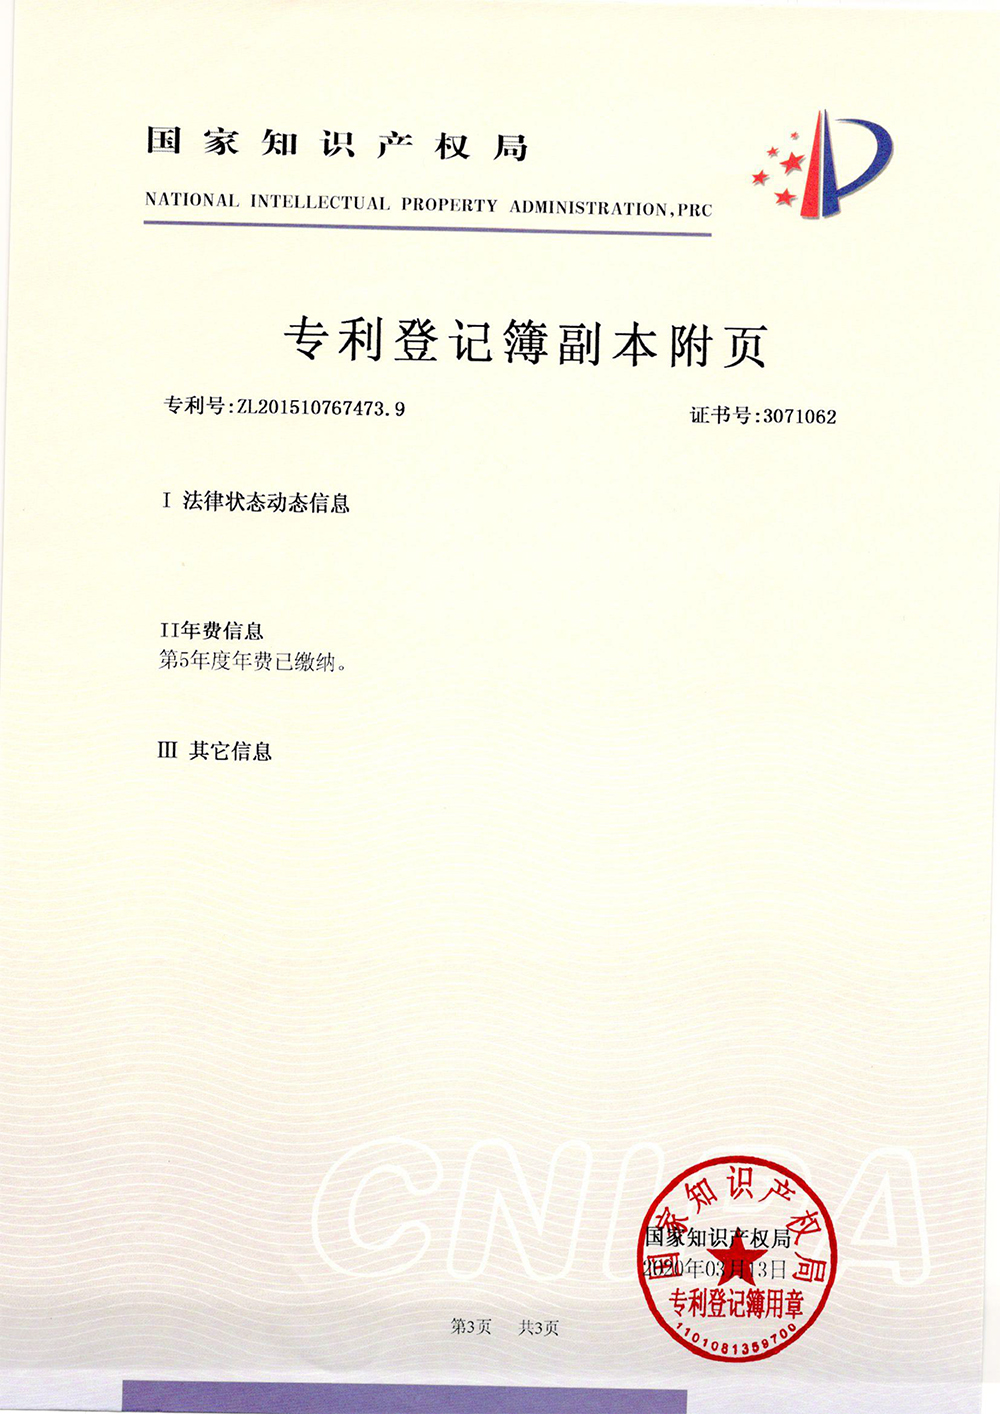 甲基咪唑的制备方法-专利部登记薄-2_上海浩登材料股份有限公司